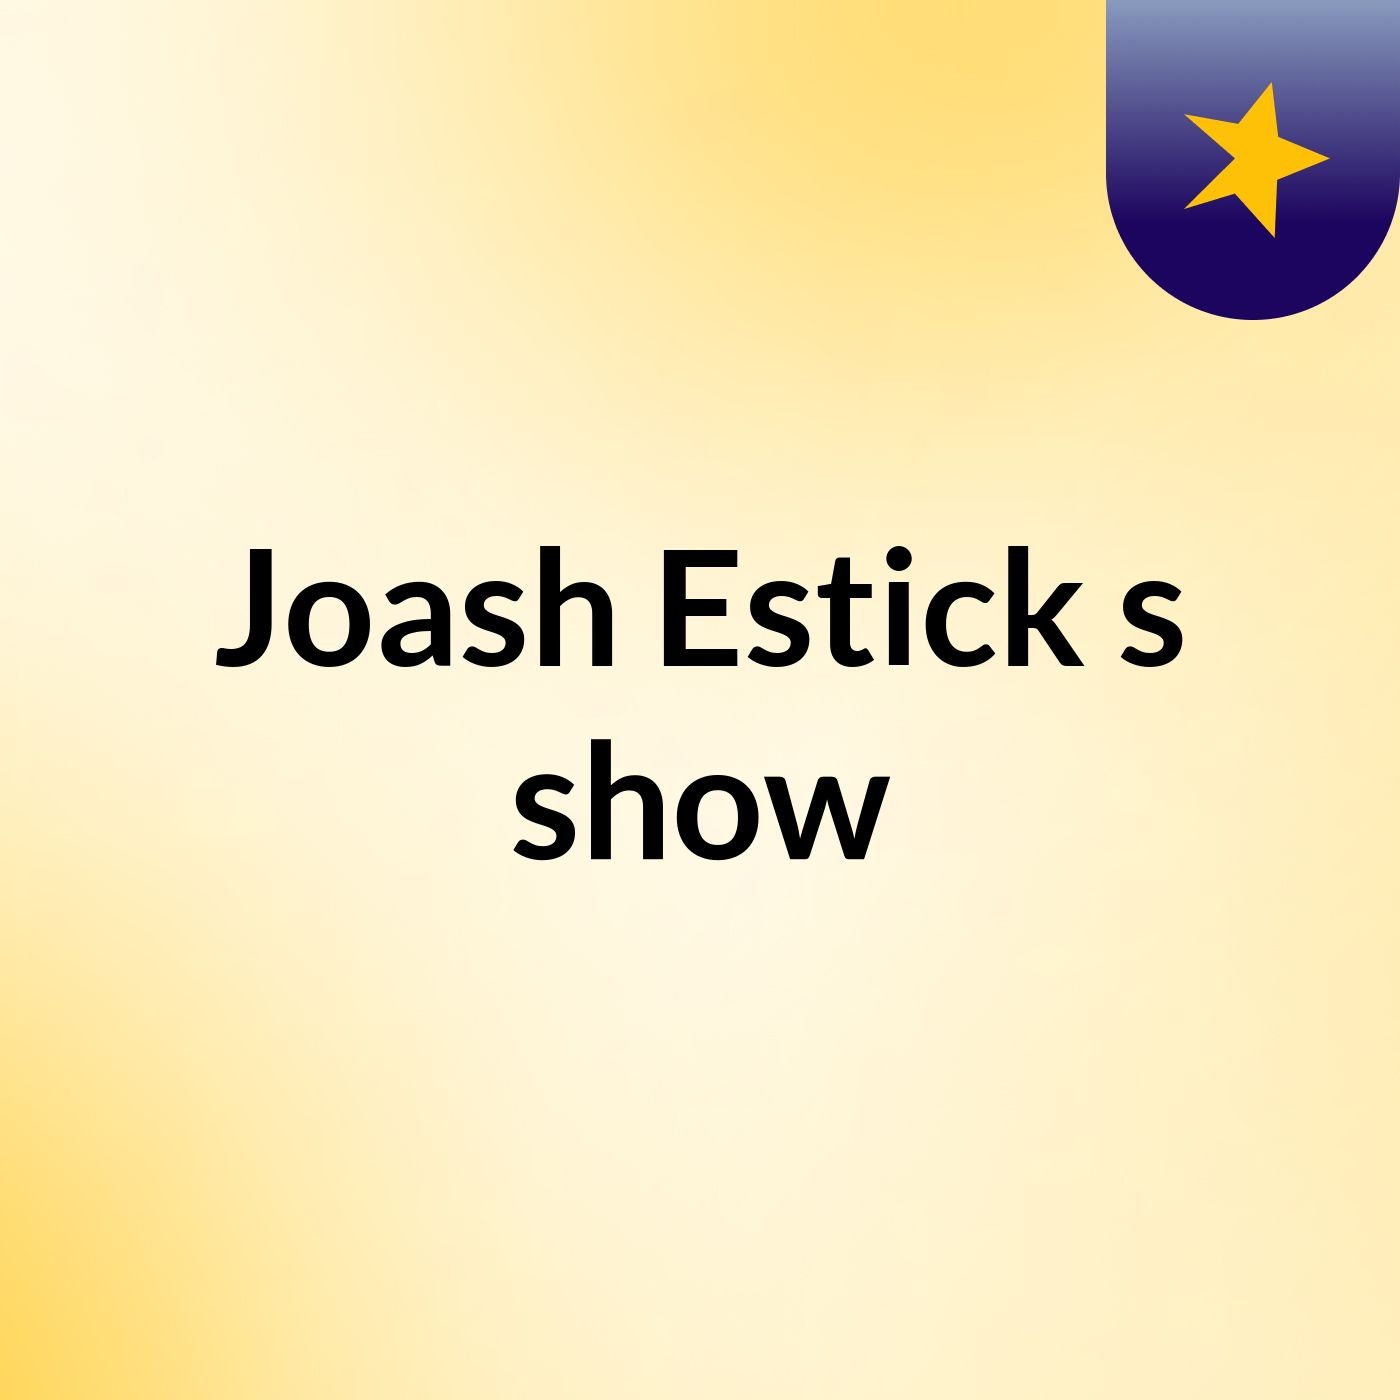 Joash Estick's show